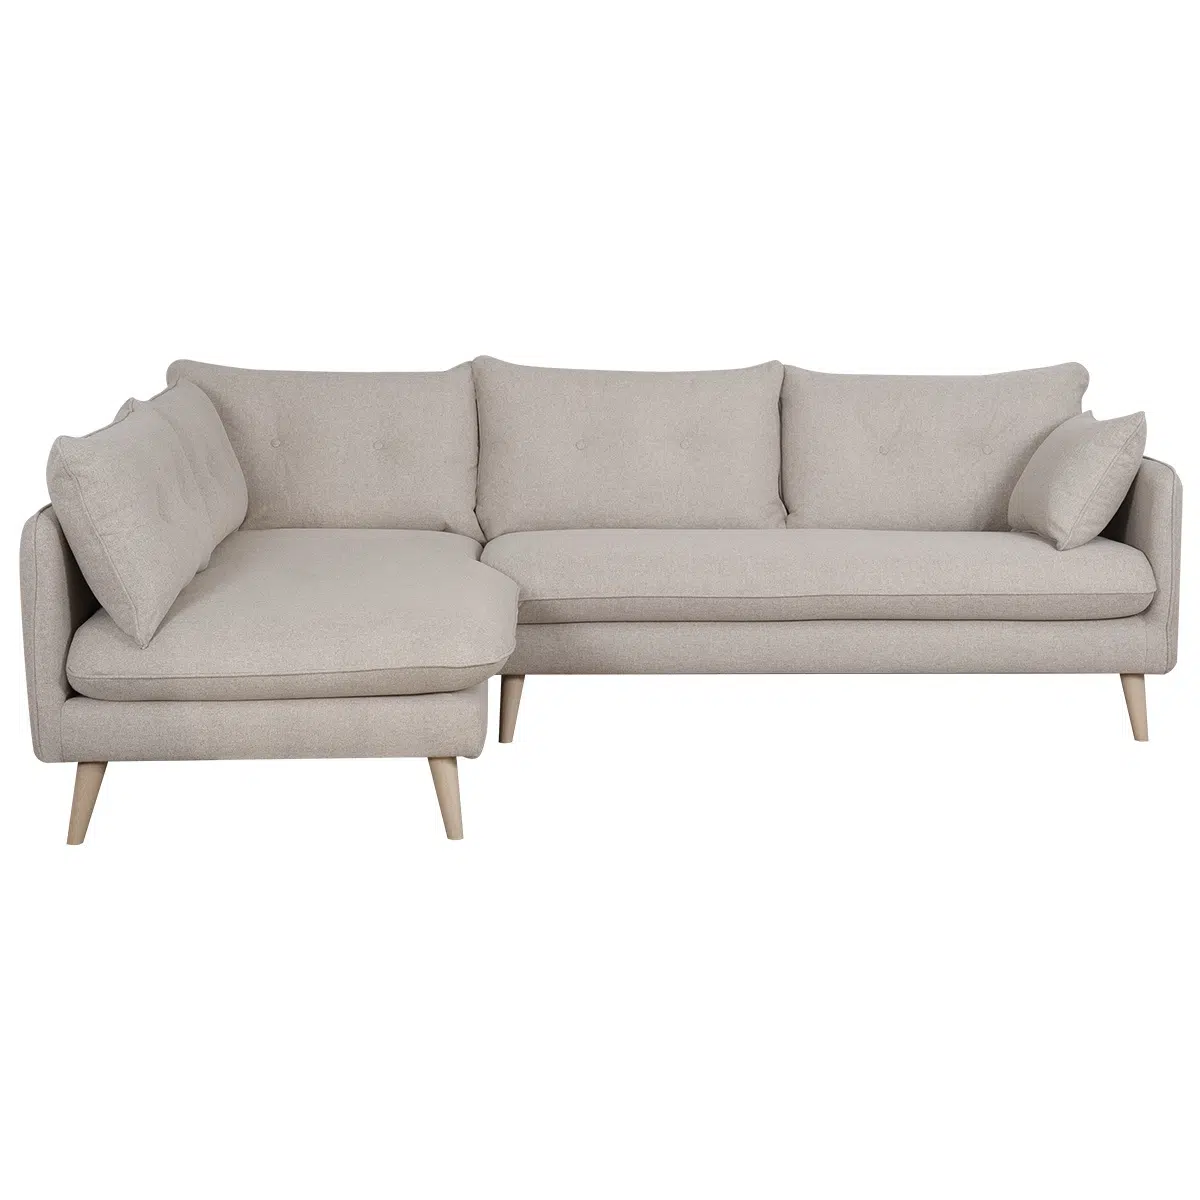 Canapé d'angle gauche scandinave 5 places en tissu beige et bois clair GUILTY